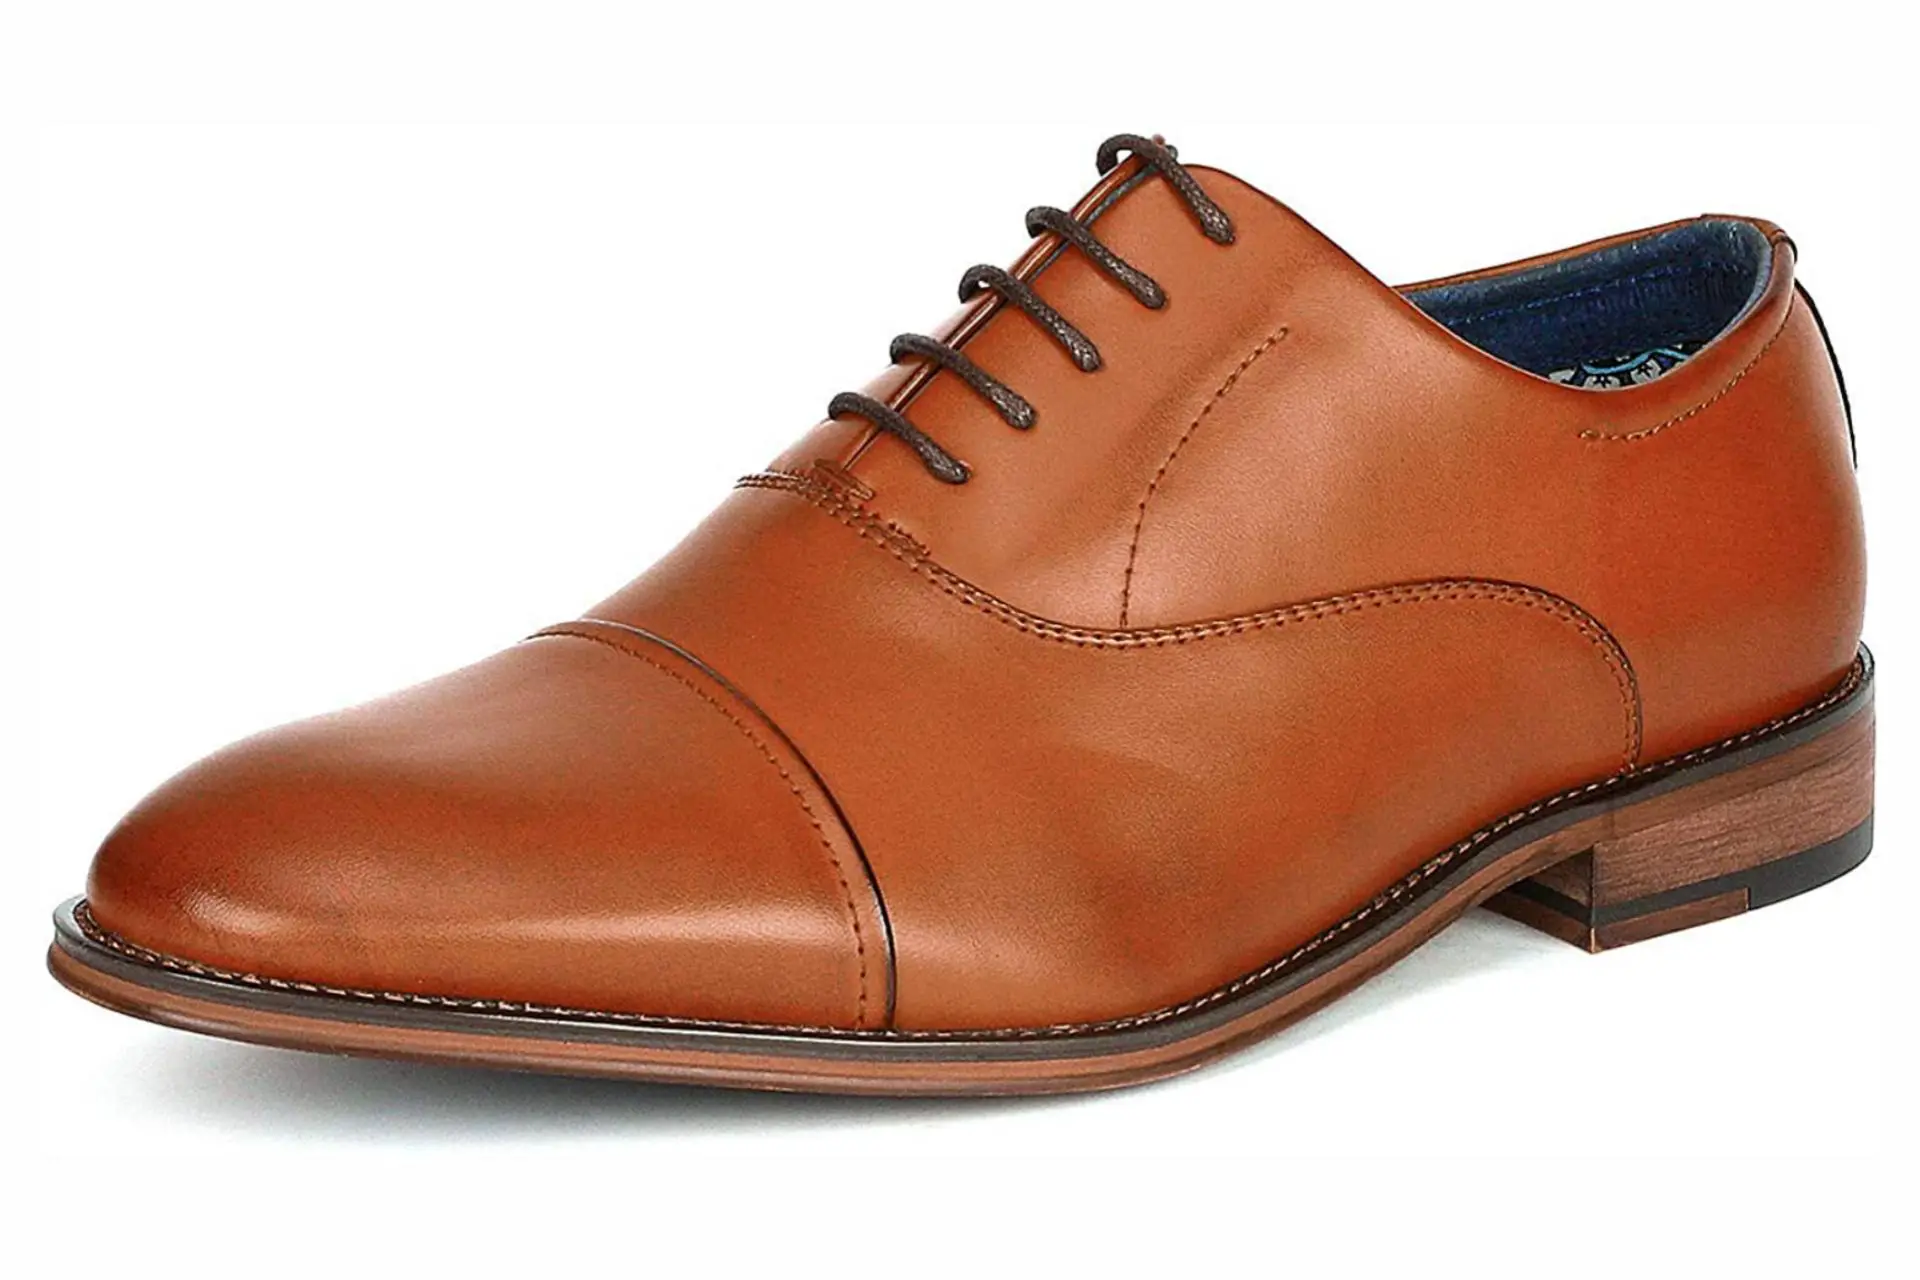 Best men's formal shoes under $50